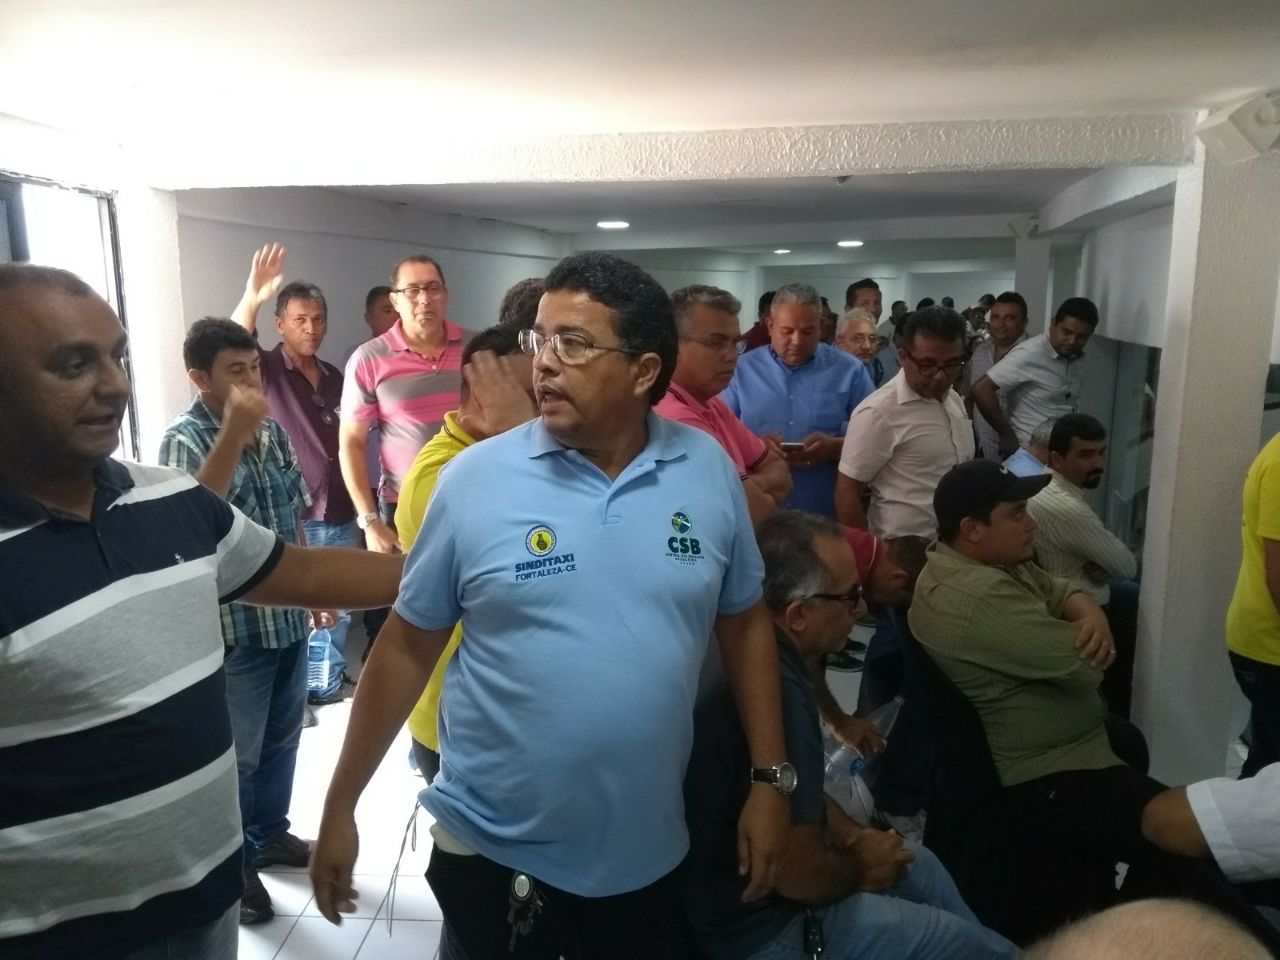 Para taxistas, regulamentação dos aplicativos de transporte não traz segurança aos passageiros de Fortaleza (CE)